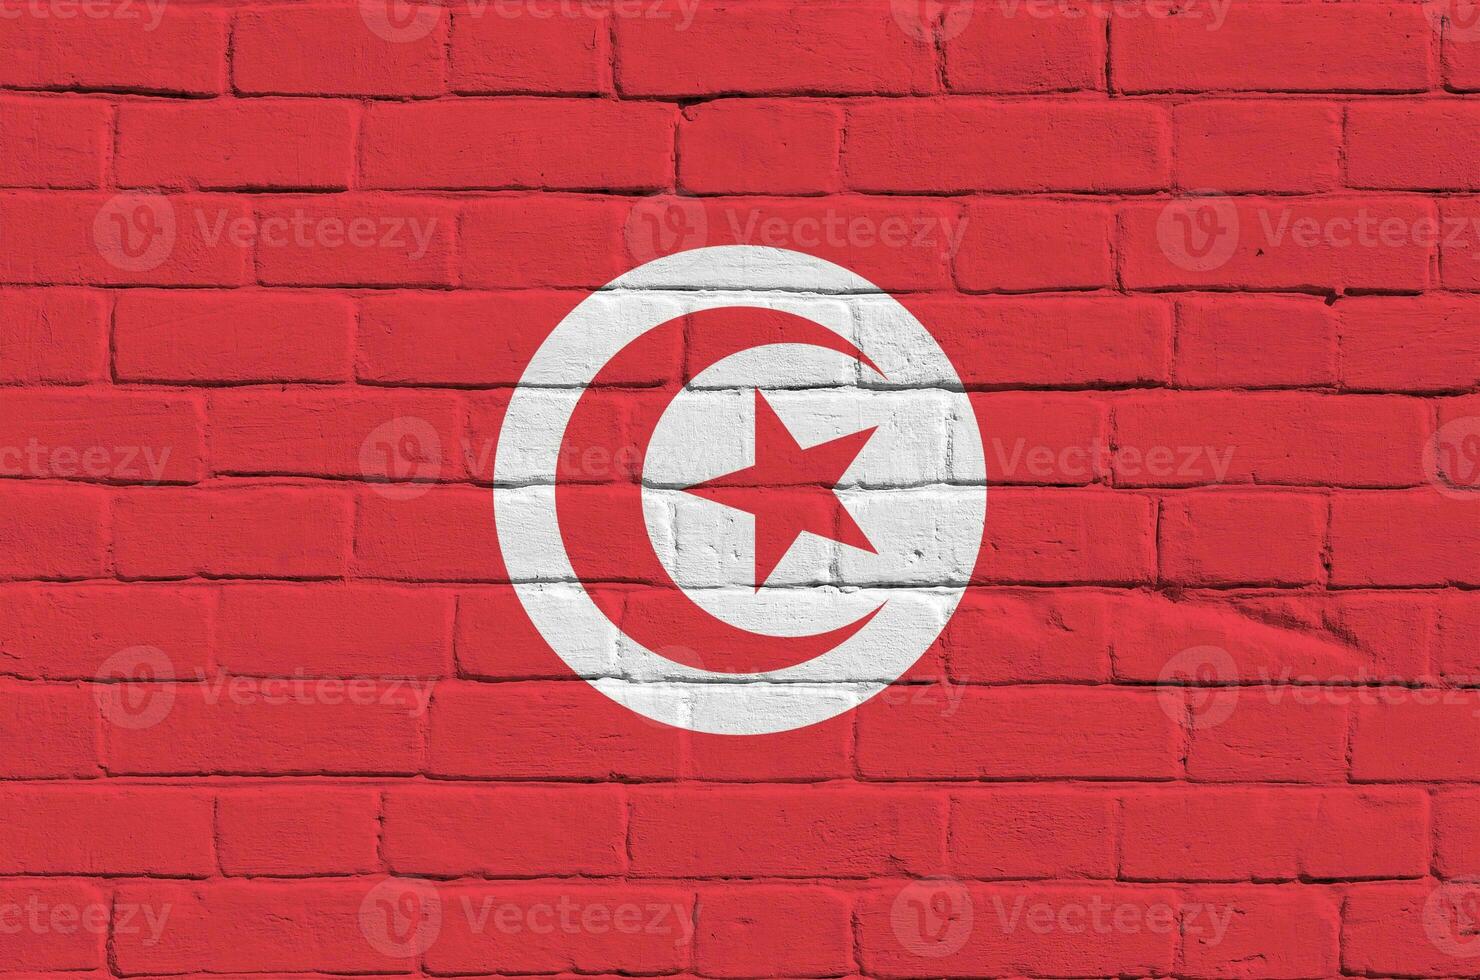 tunisien flagga avbildad i måla färger på gammal tegel vägg. texturerad baner på stor tegel vägg murverk bakgrund foto